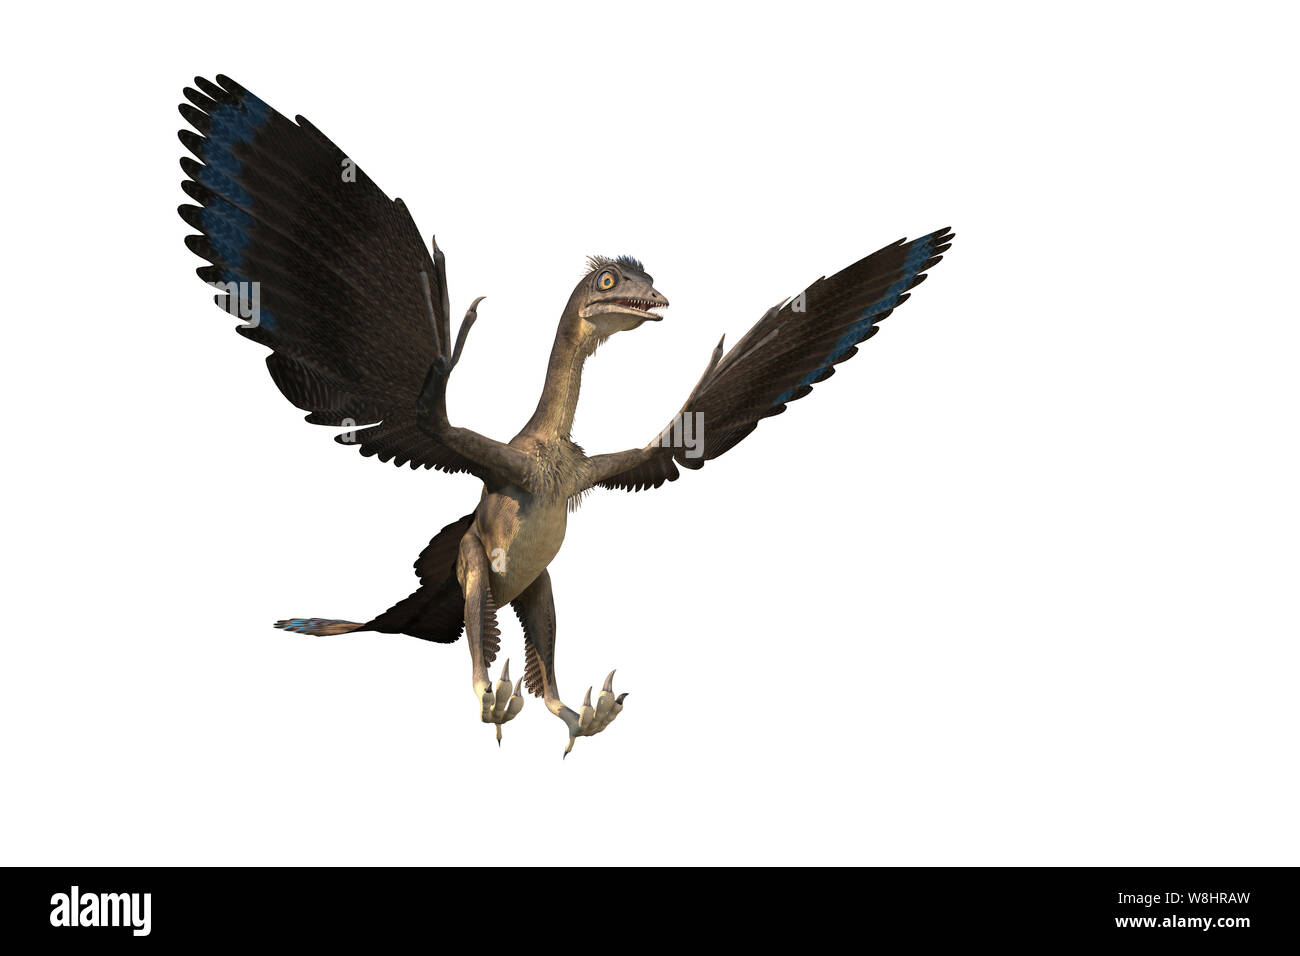 Archaeopteryx Dinosaurier vor weißem Hintergrund, Illustration. Diese Vogel wie Dinosaurier vor 150 Millionen Jahren lebte während der späten Kreidezeit. Stockfoto